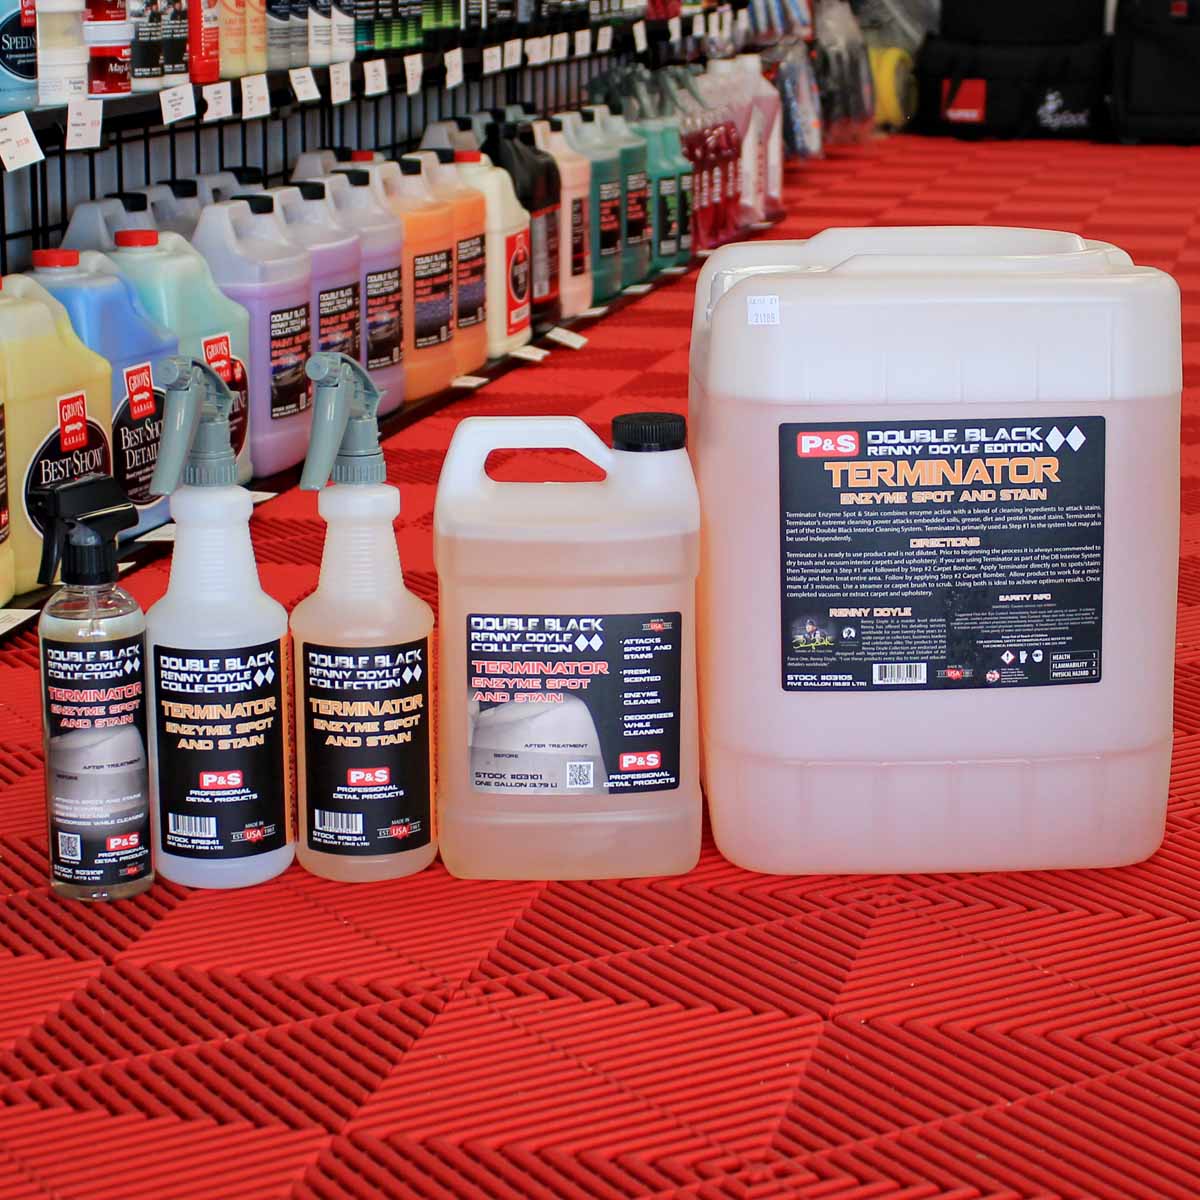 P&S Carpet Bomber Kit | 1 Gallon & Spray Bottle | Upholstery Cleaner